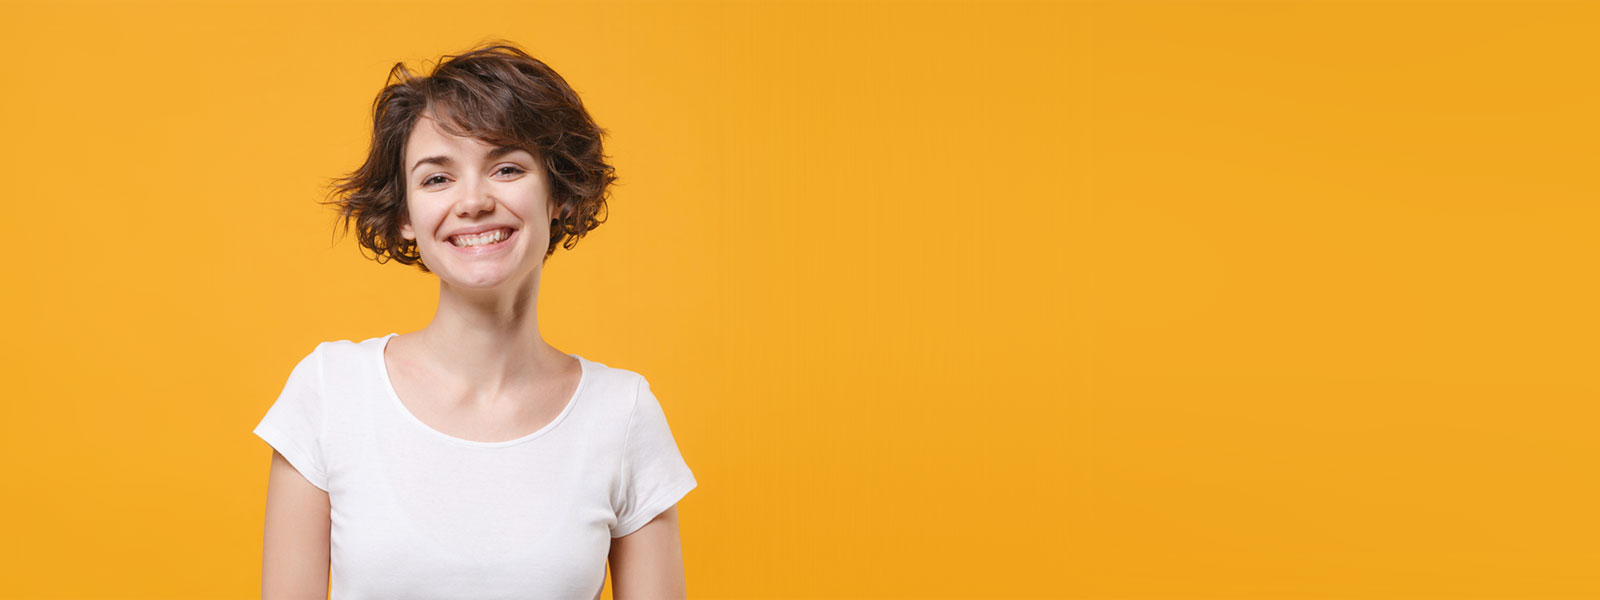 Freundliche junge Frau auf orangem Hintergrund